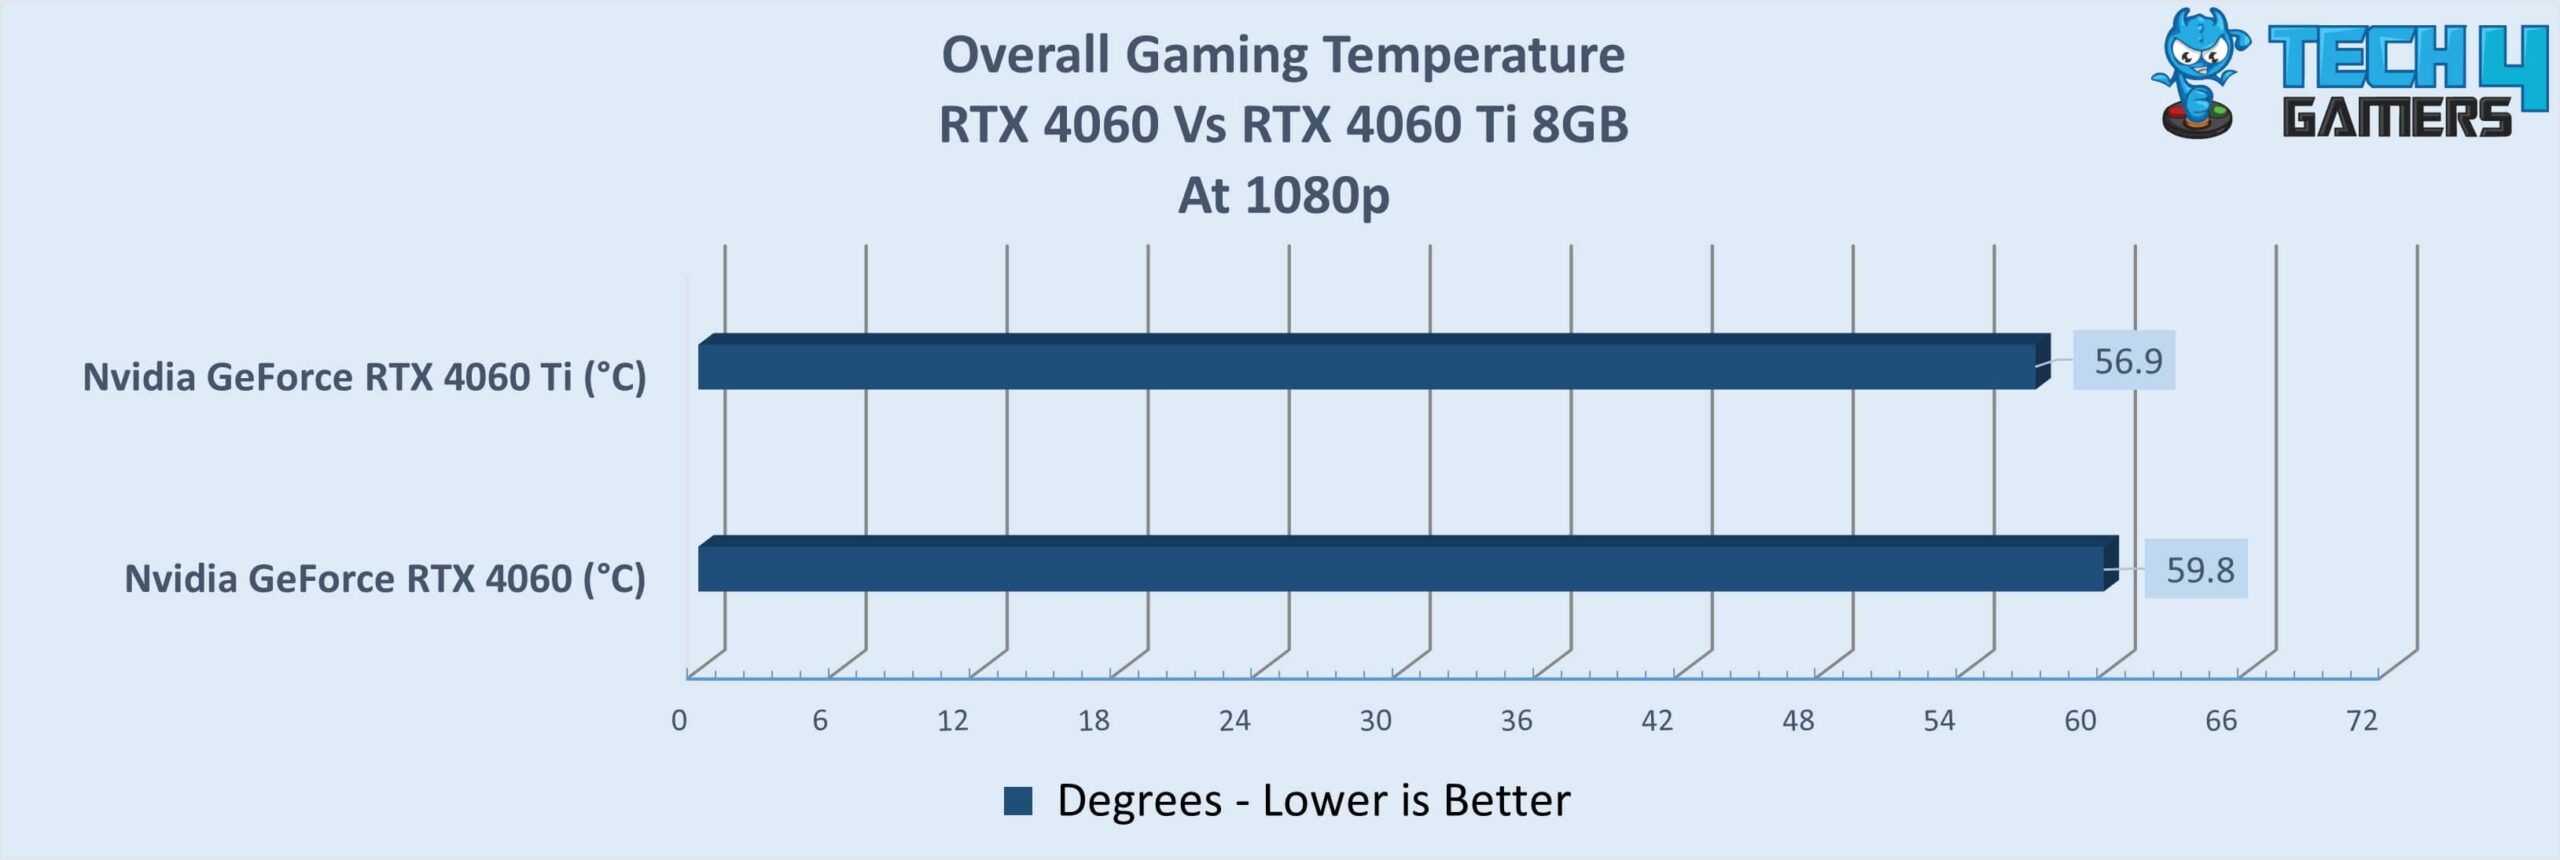 Average gaming temperature